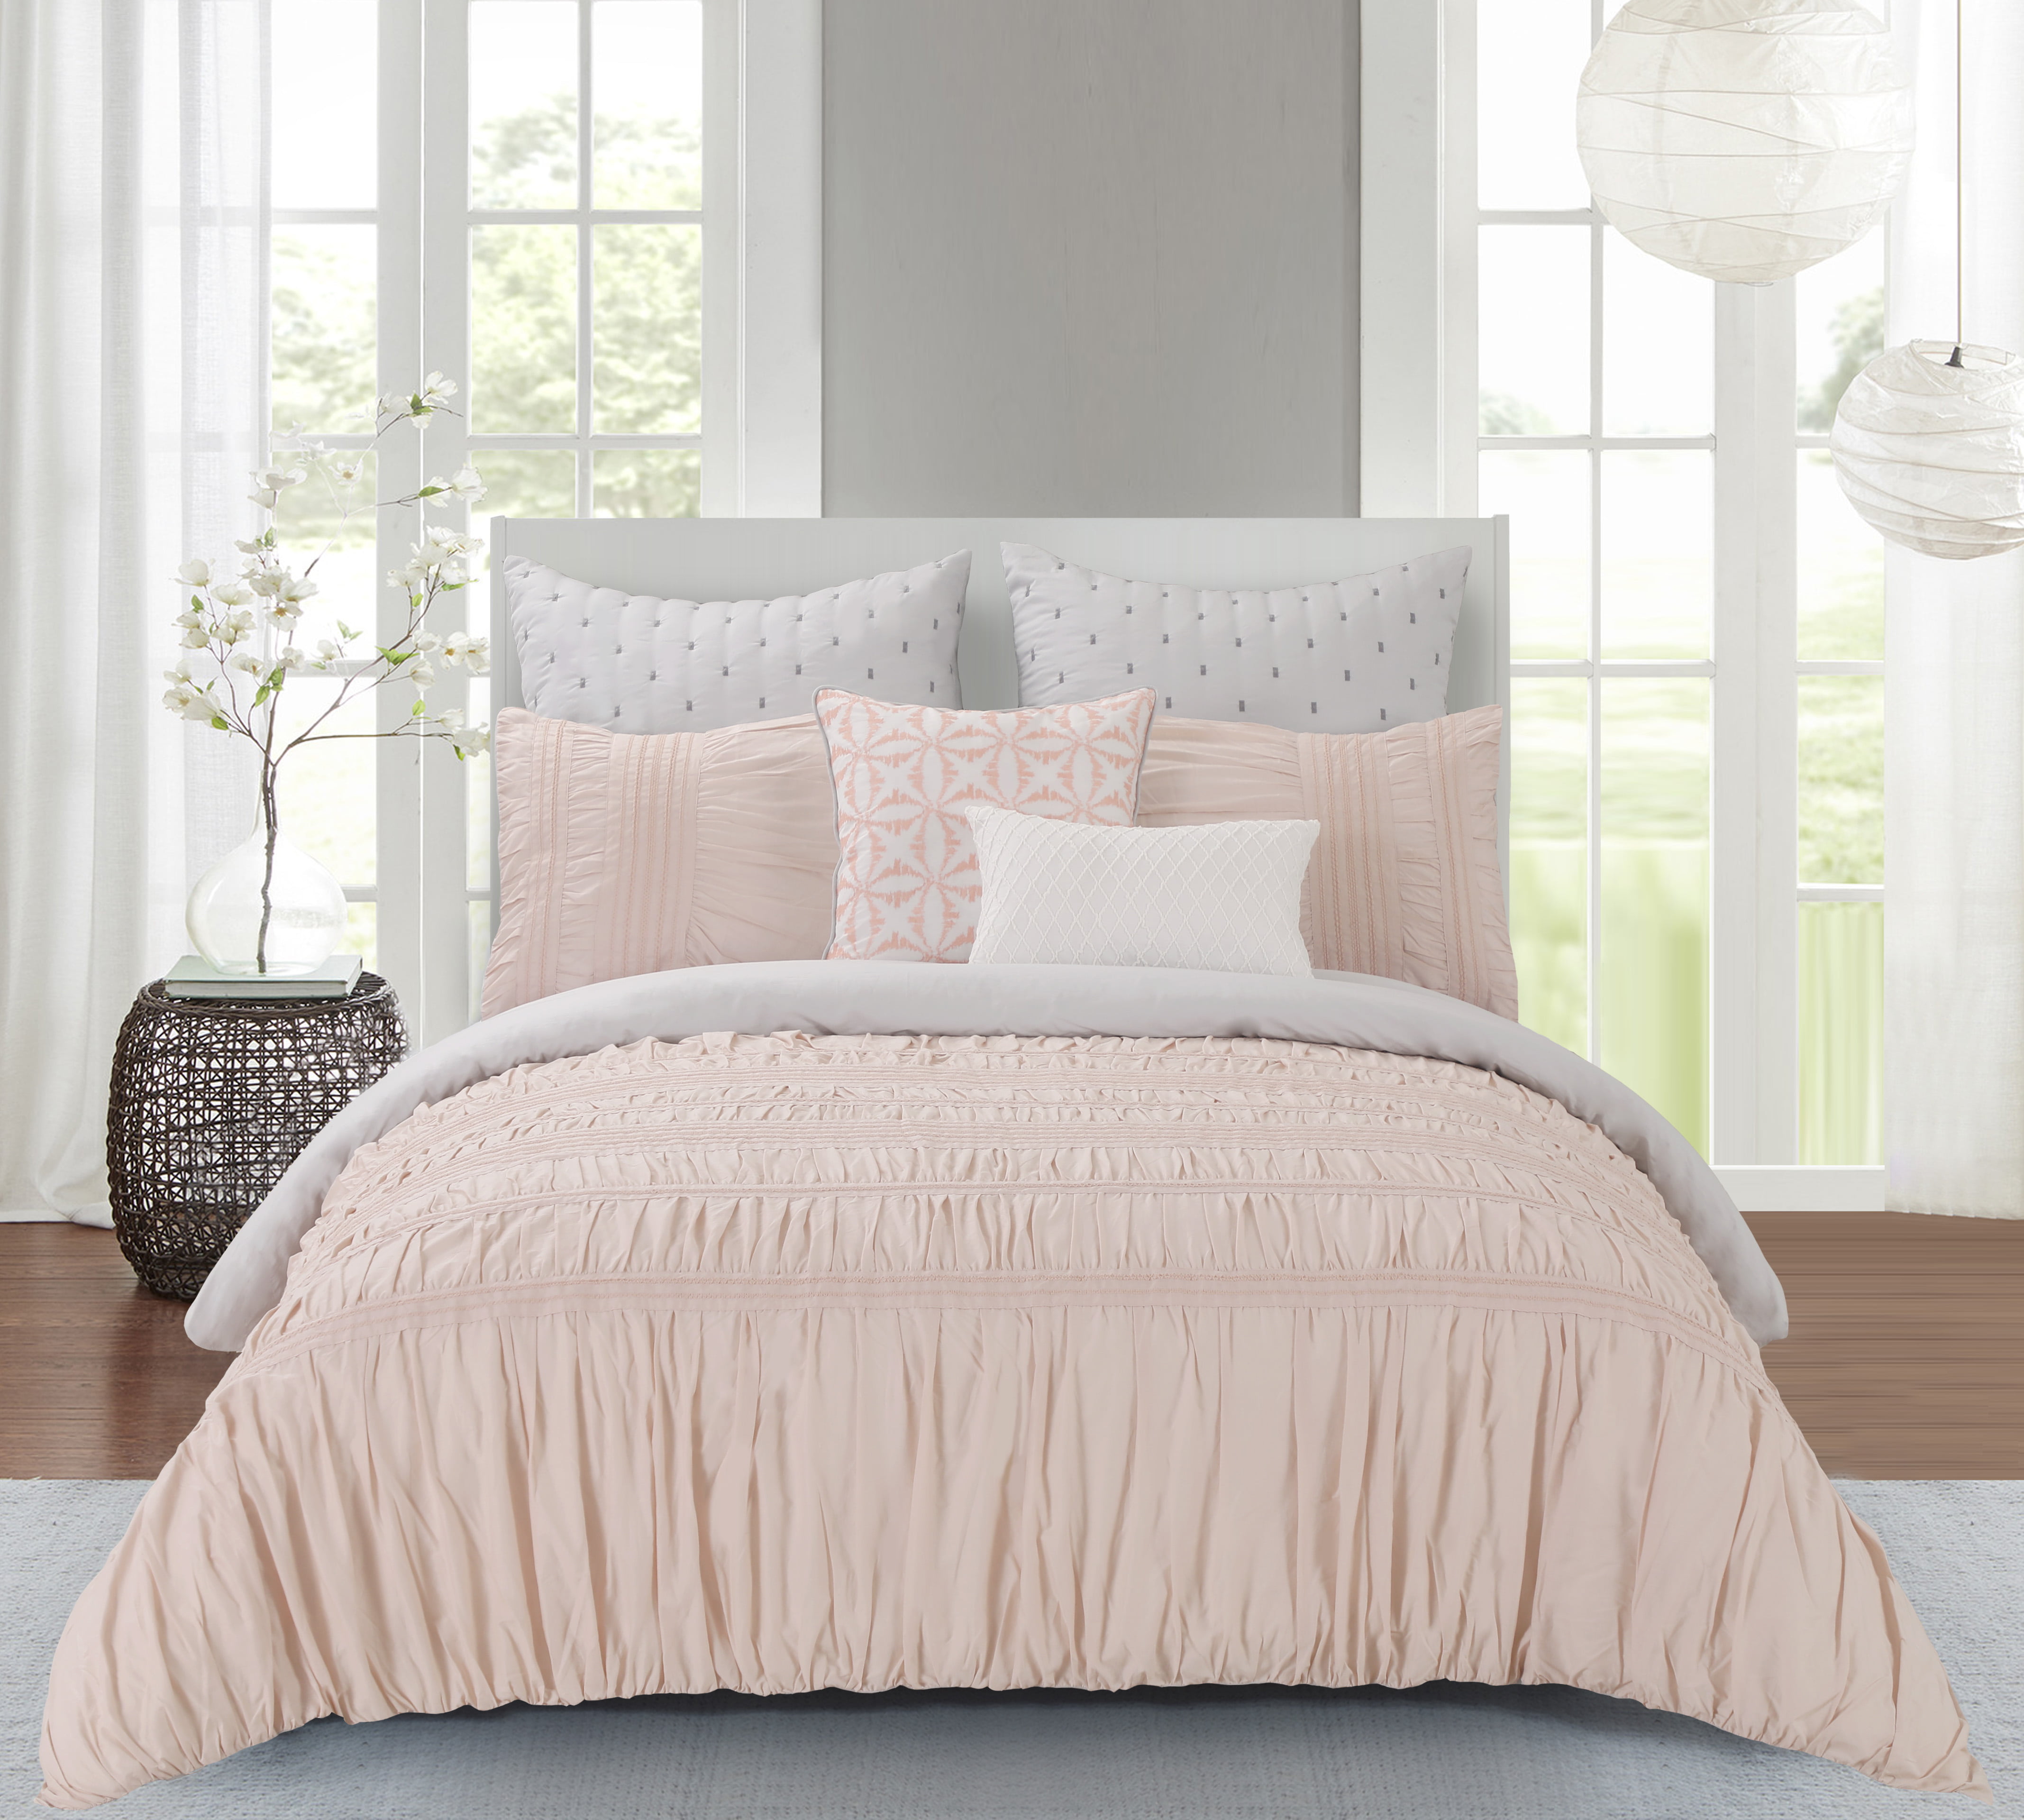 Wonder Home Rushed Bed 7pc Comforter Set Queen Pinkgrey